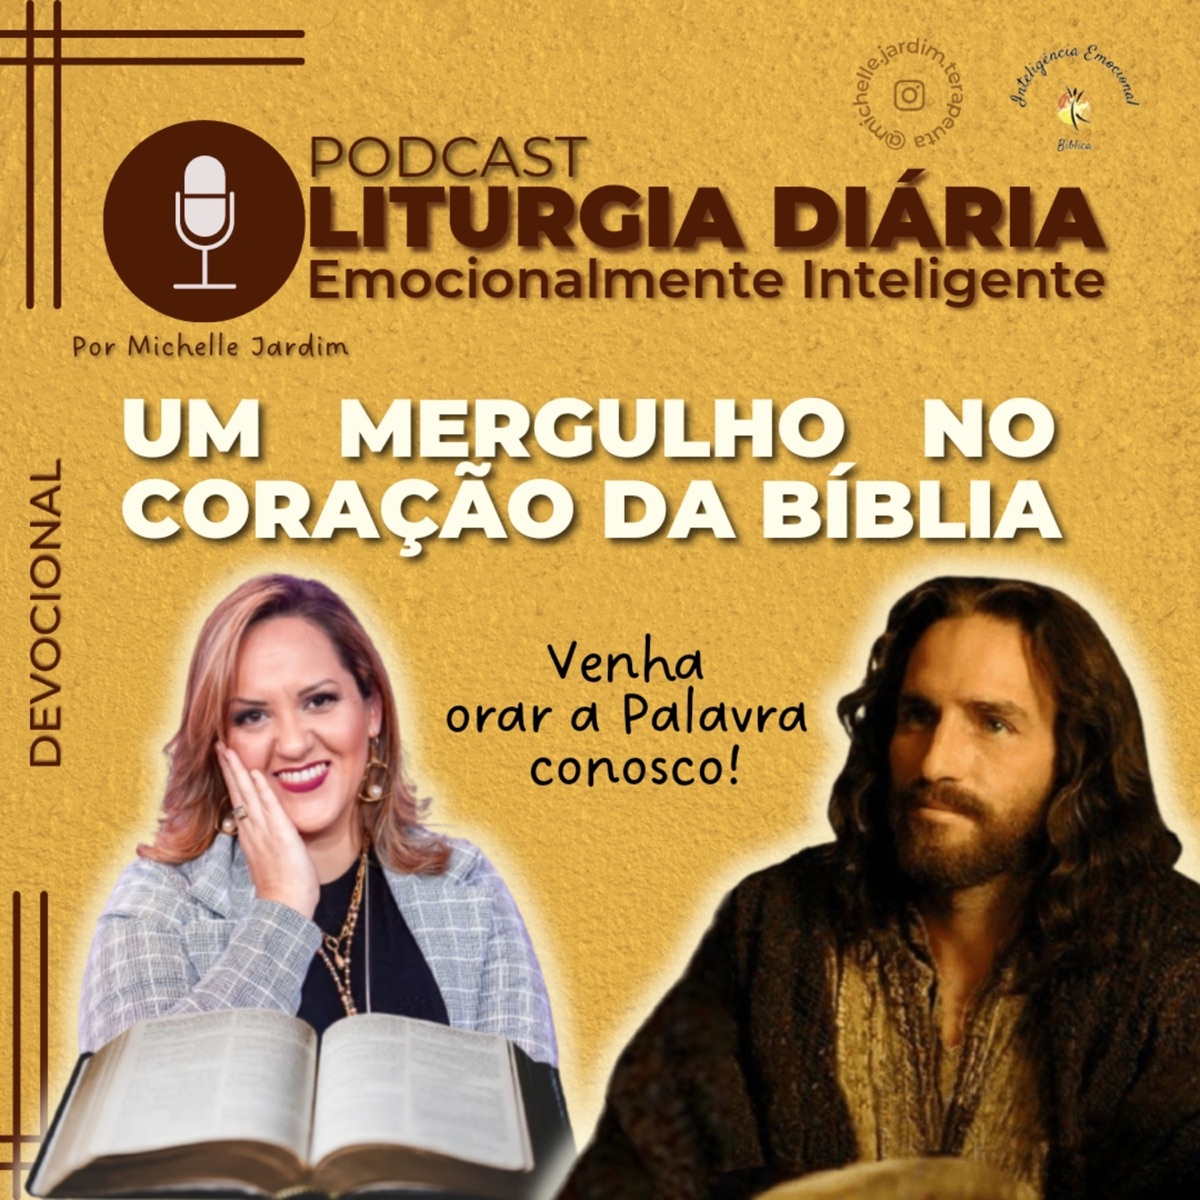 Despertar com Jesus - Podcast – Podtail